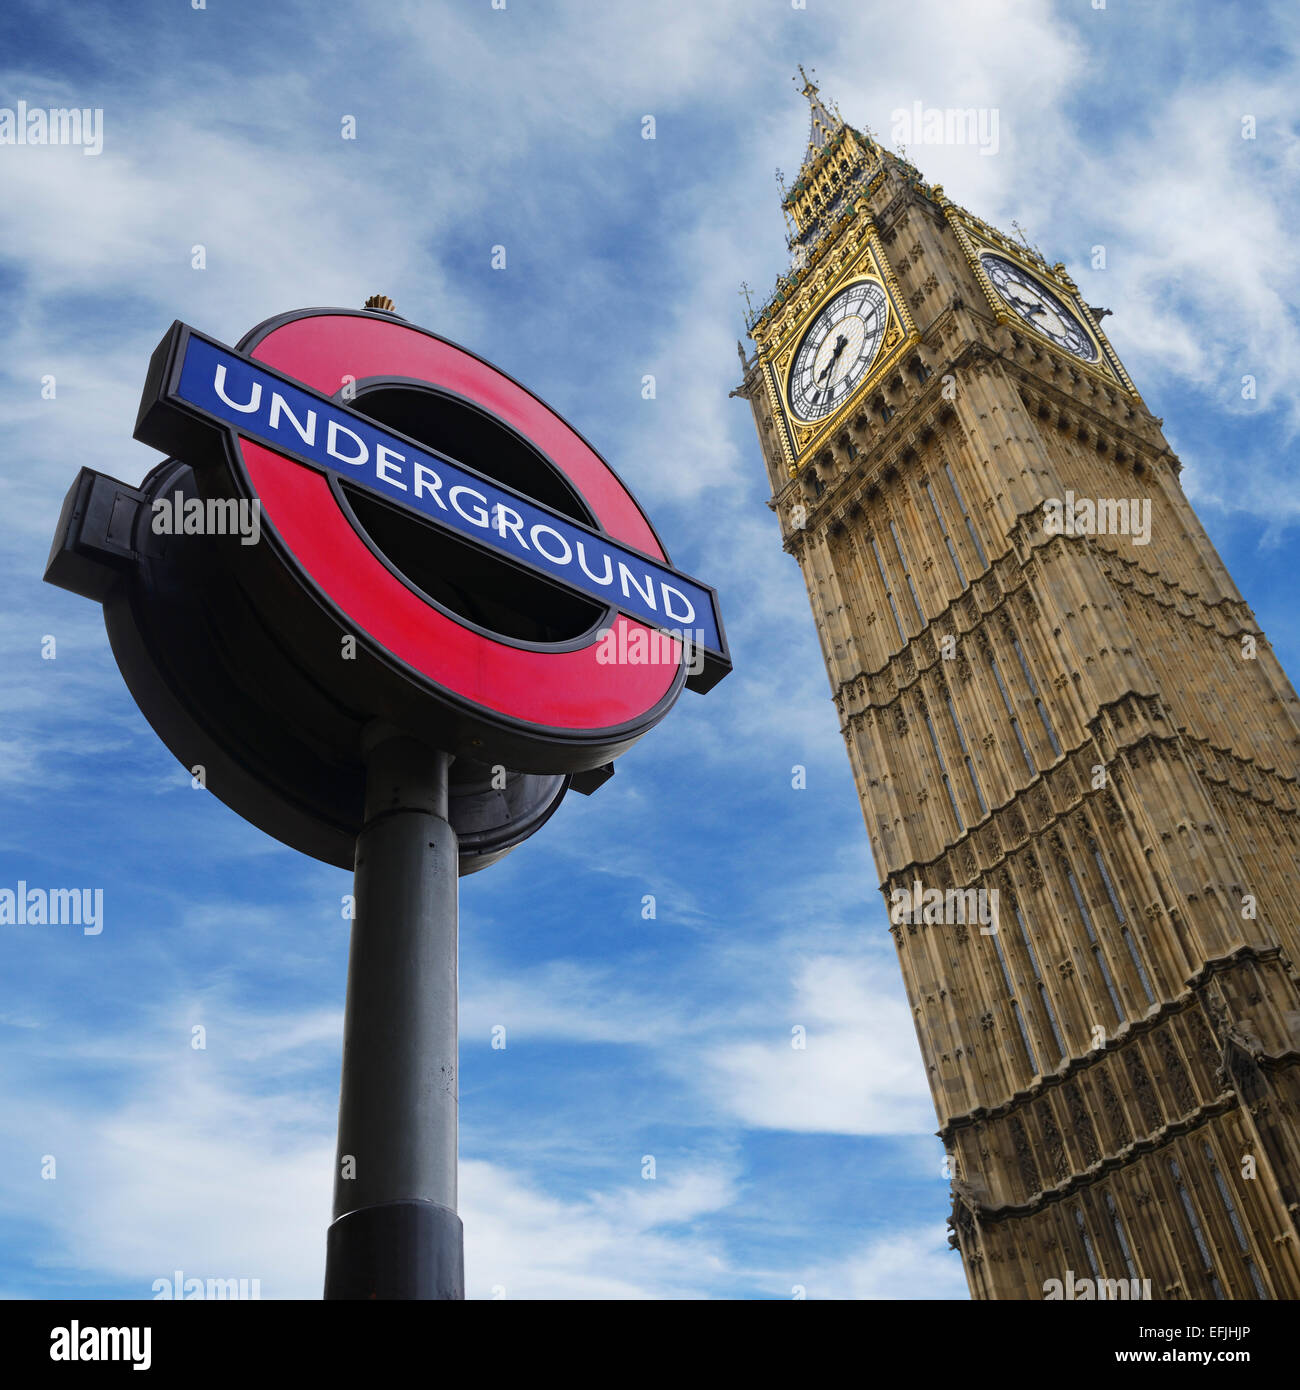 Londra, Inghilterra. Segno della metropolitana e il Big Ben, entrambe le famose icone di Londra. Regno Unito. Foto Stock